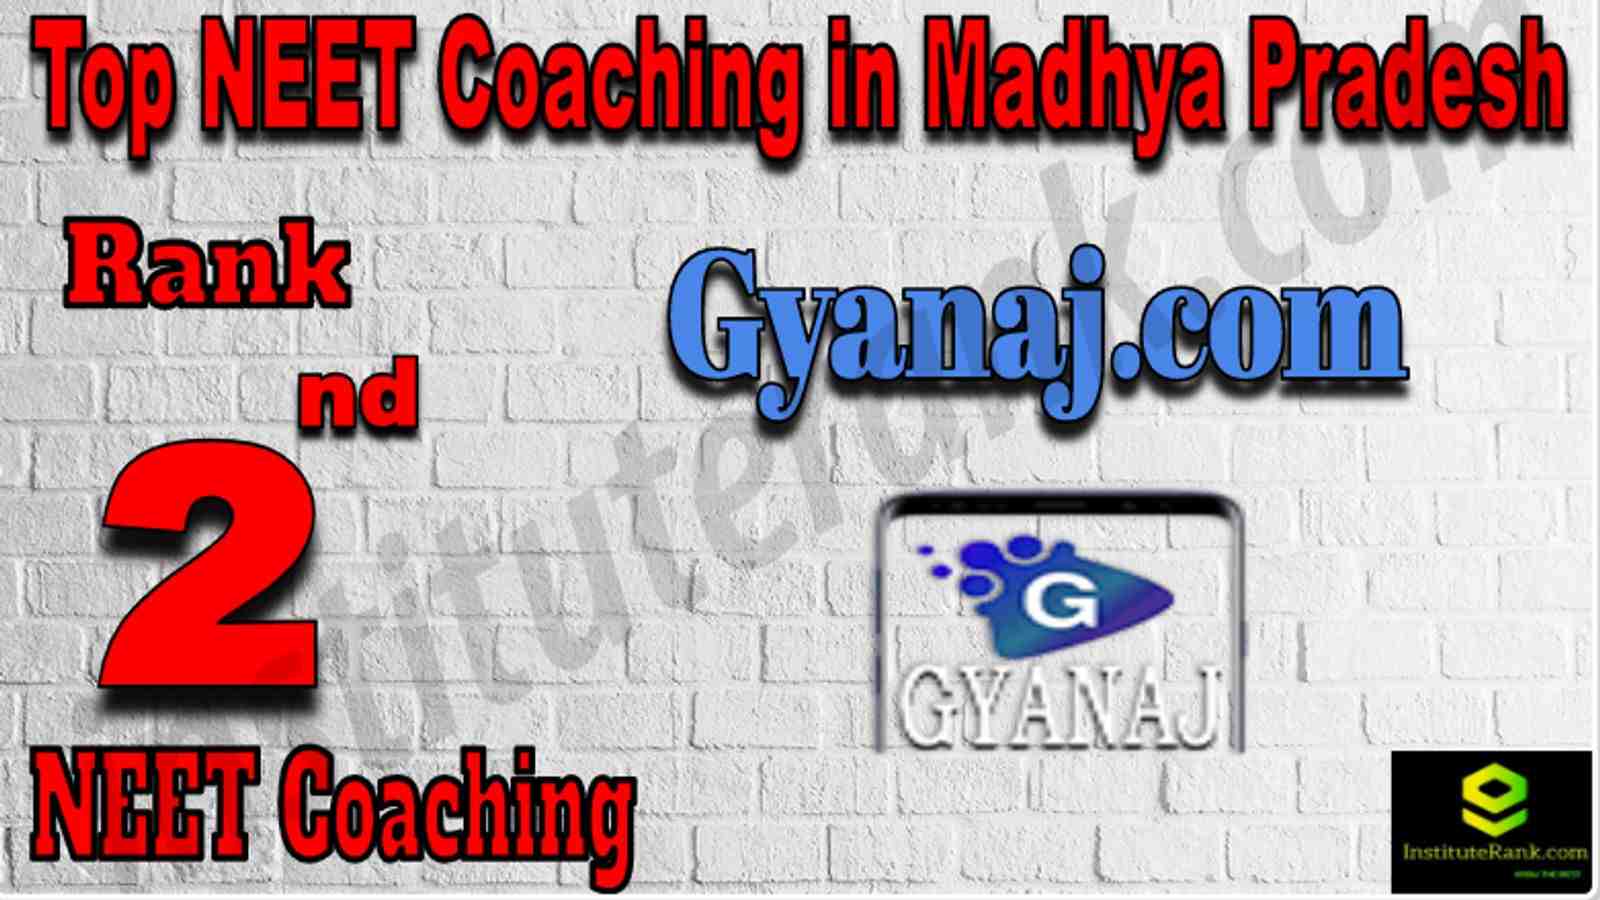 Rank 2 Top NEET Coaching in Madhya Pradesh